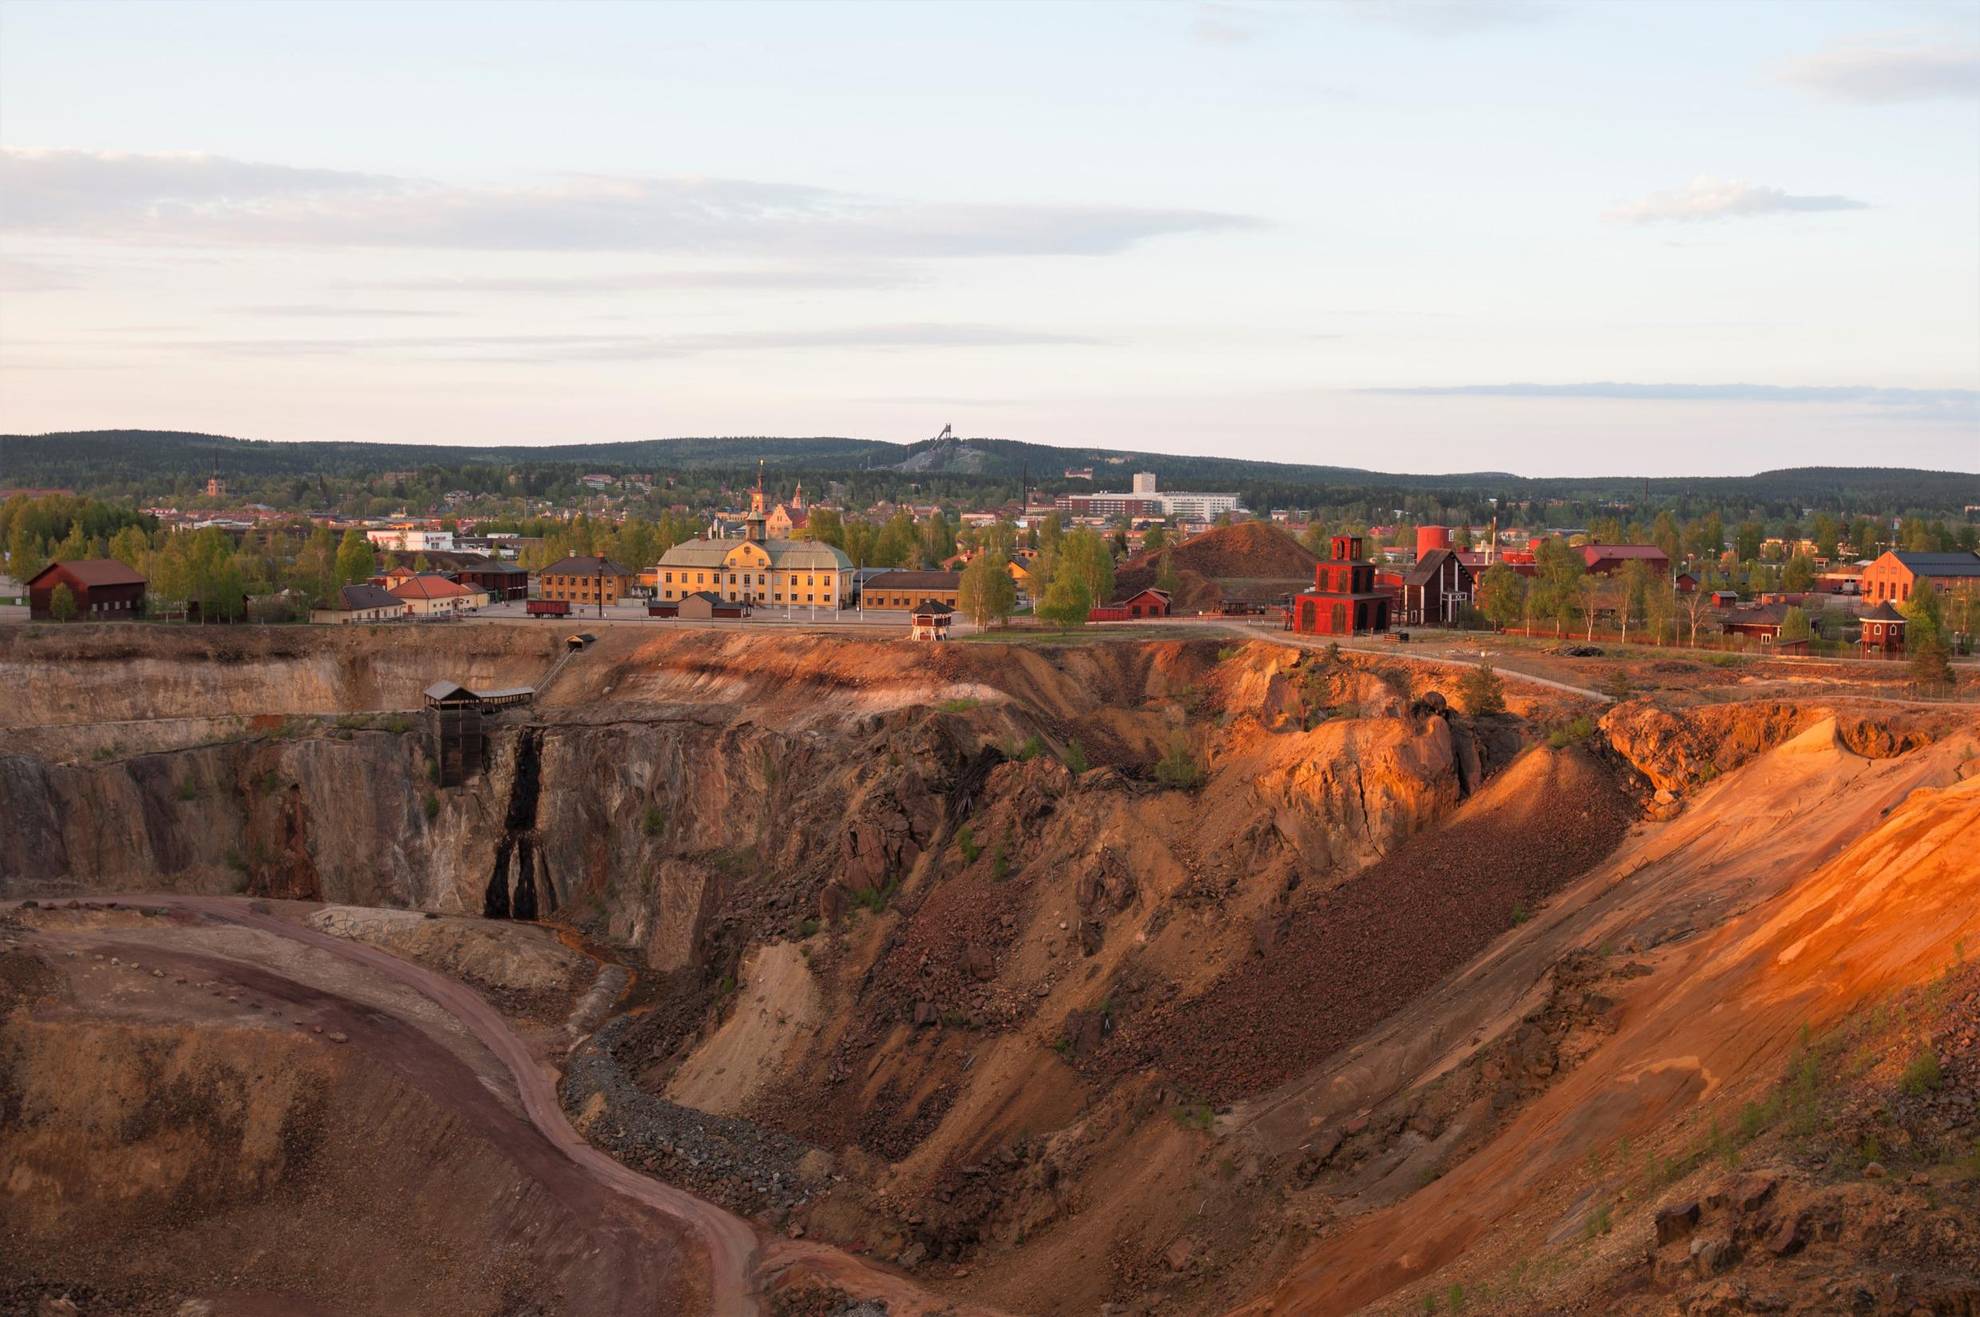 Vue aérienne de la mine de Falun et de ses environs.